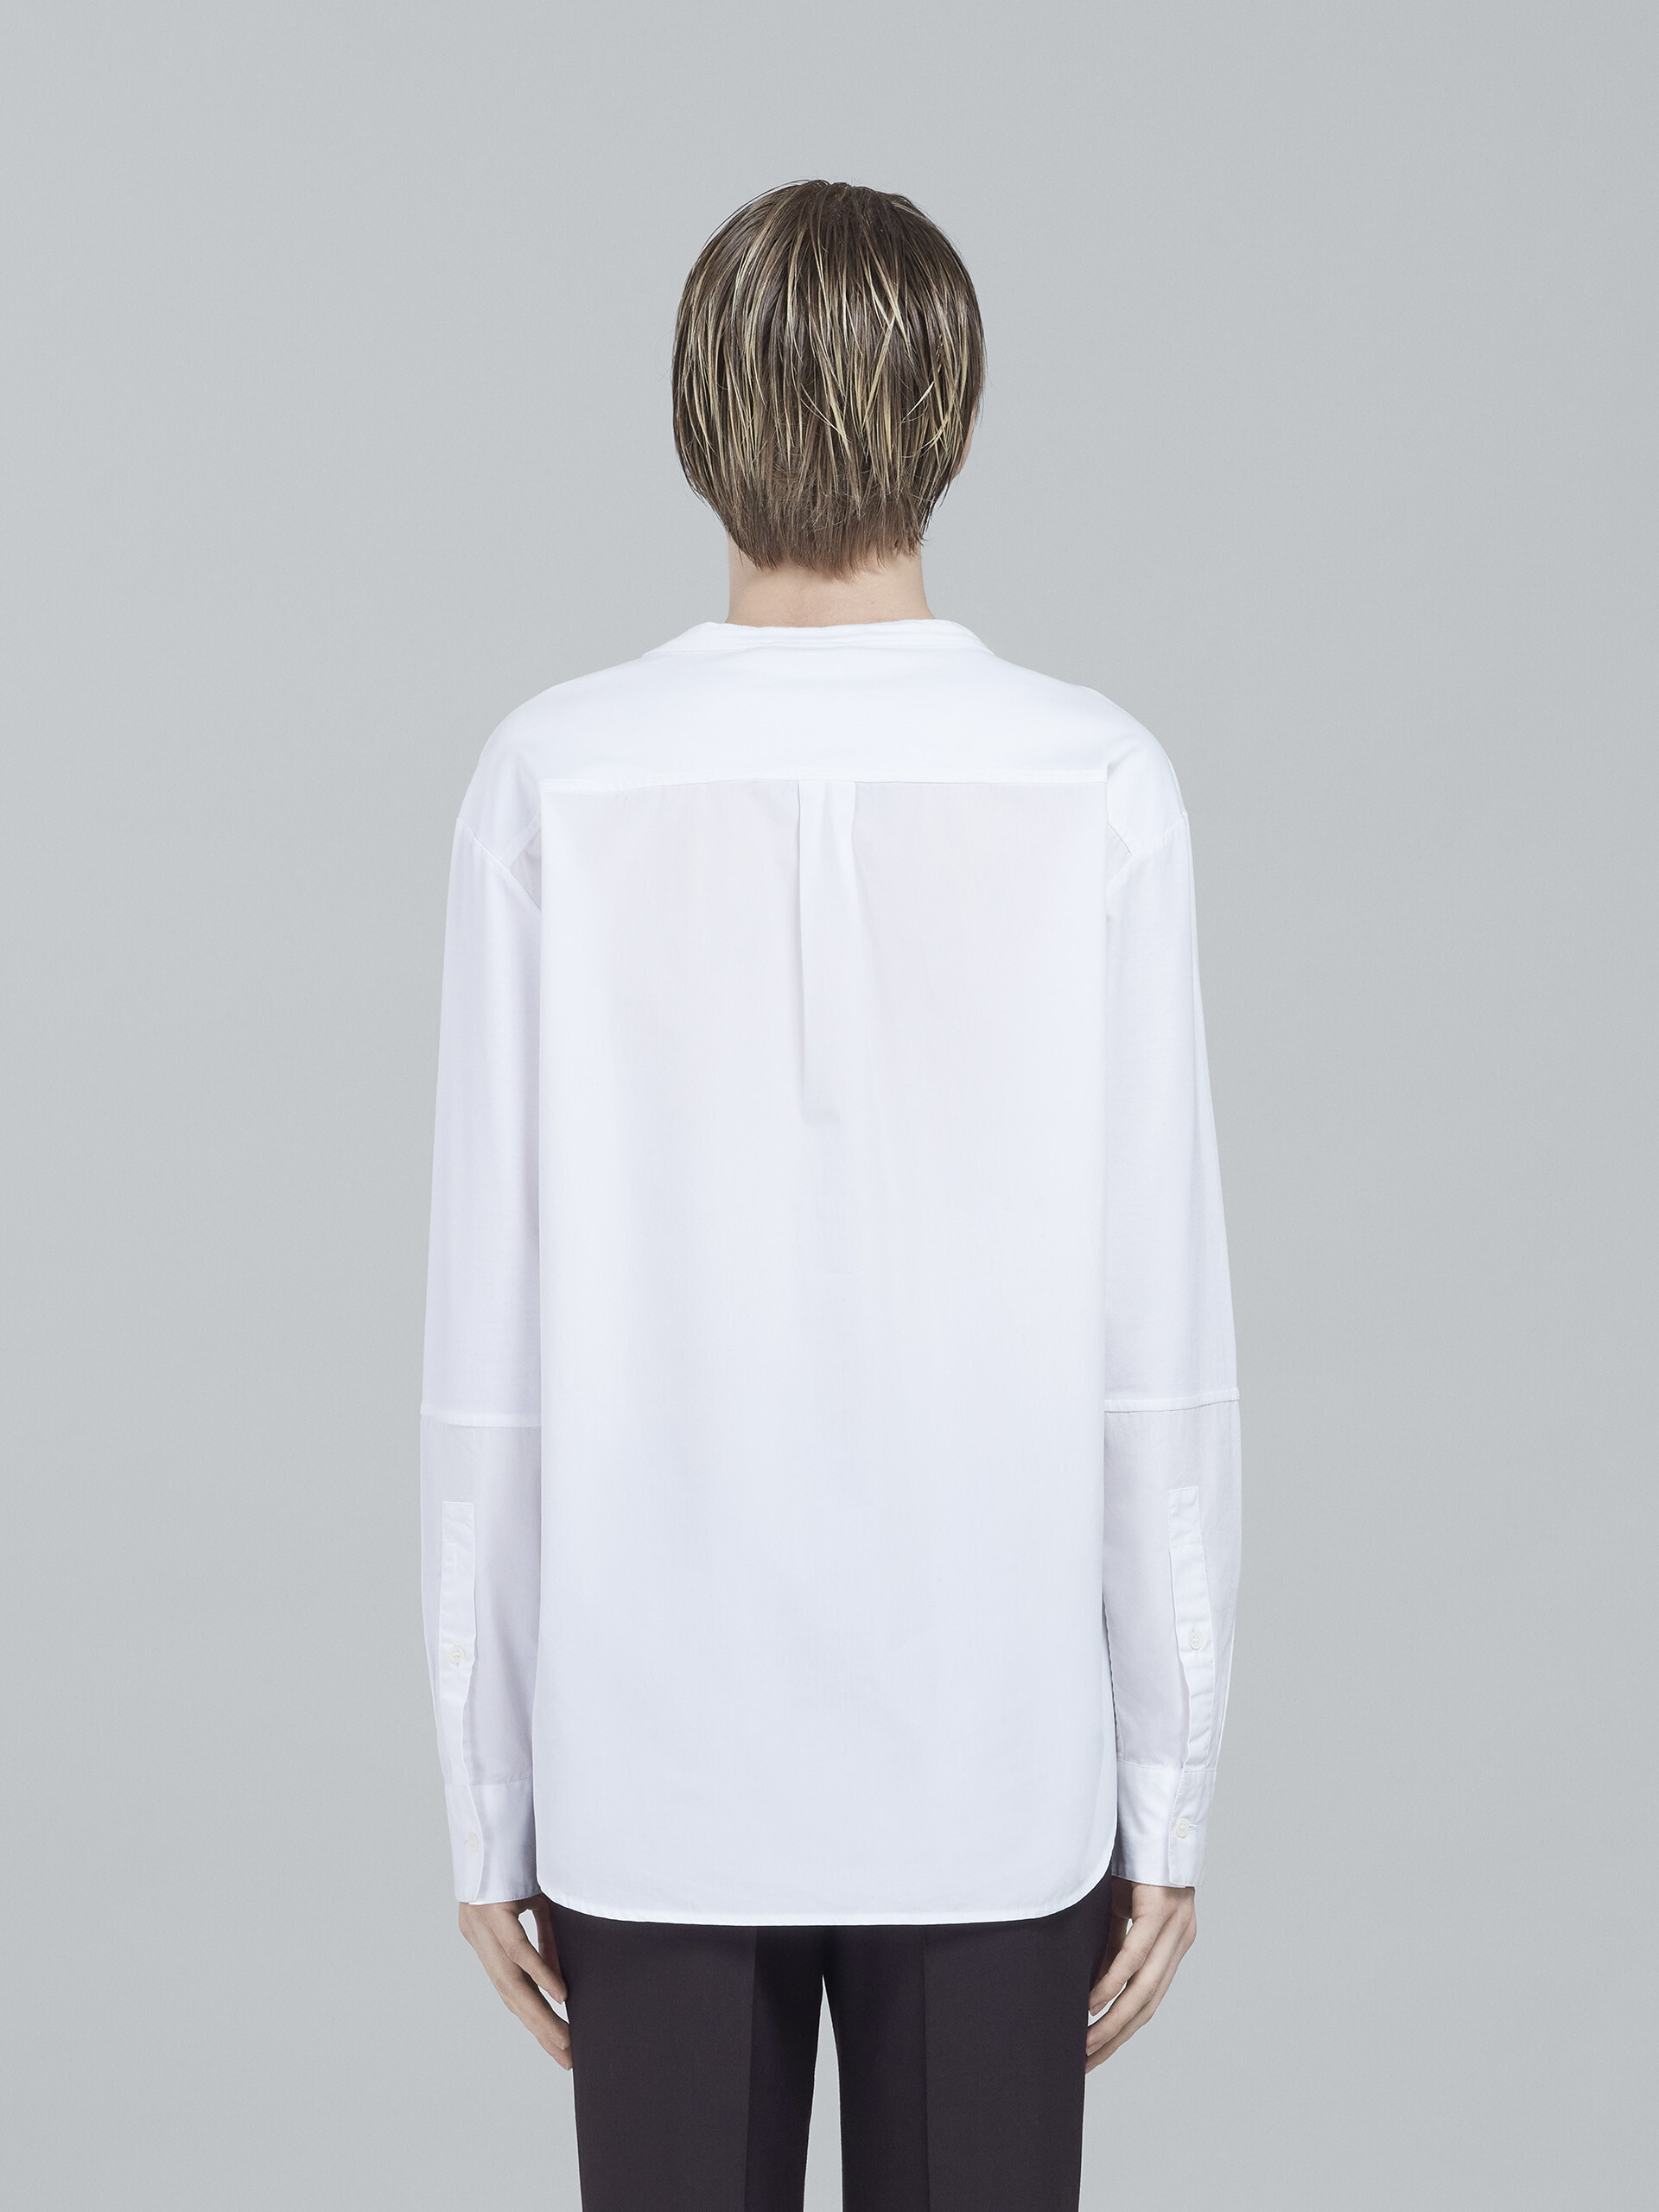 Camiseta de jersey de algodón biológico y popelina - Camisetas - Image 3